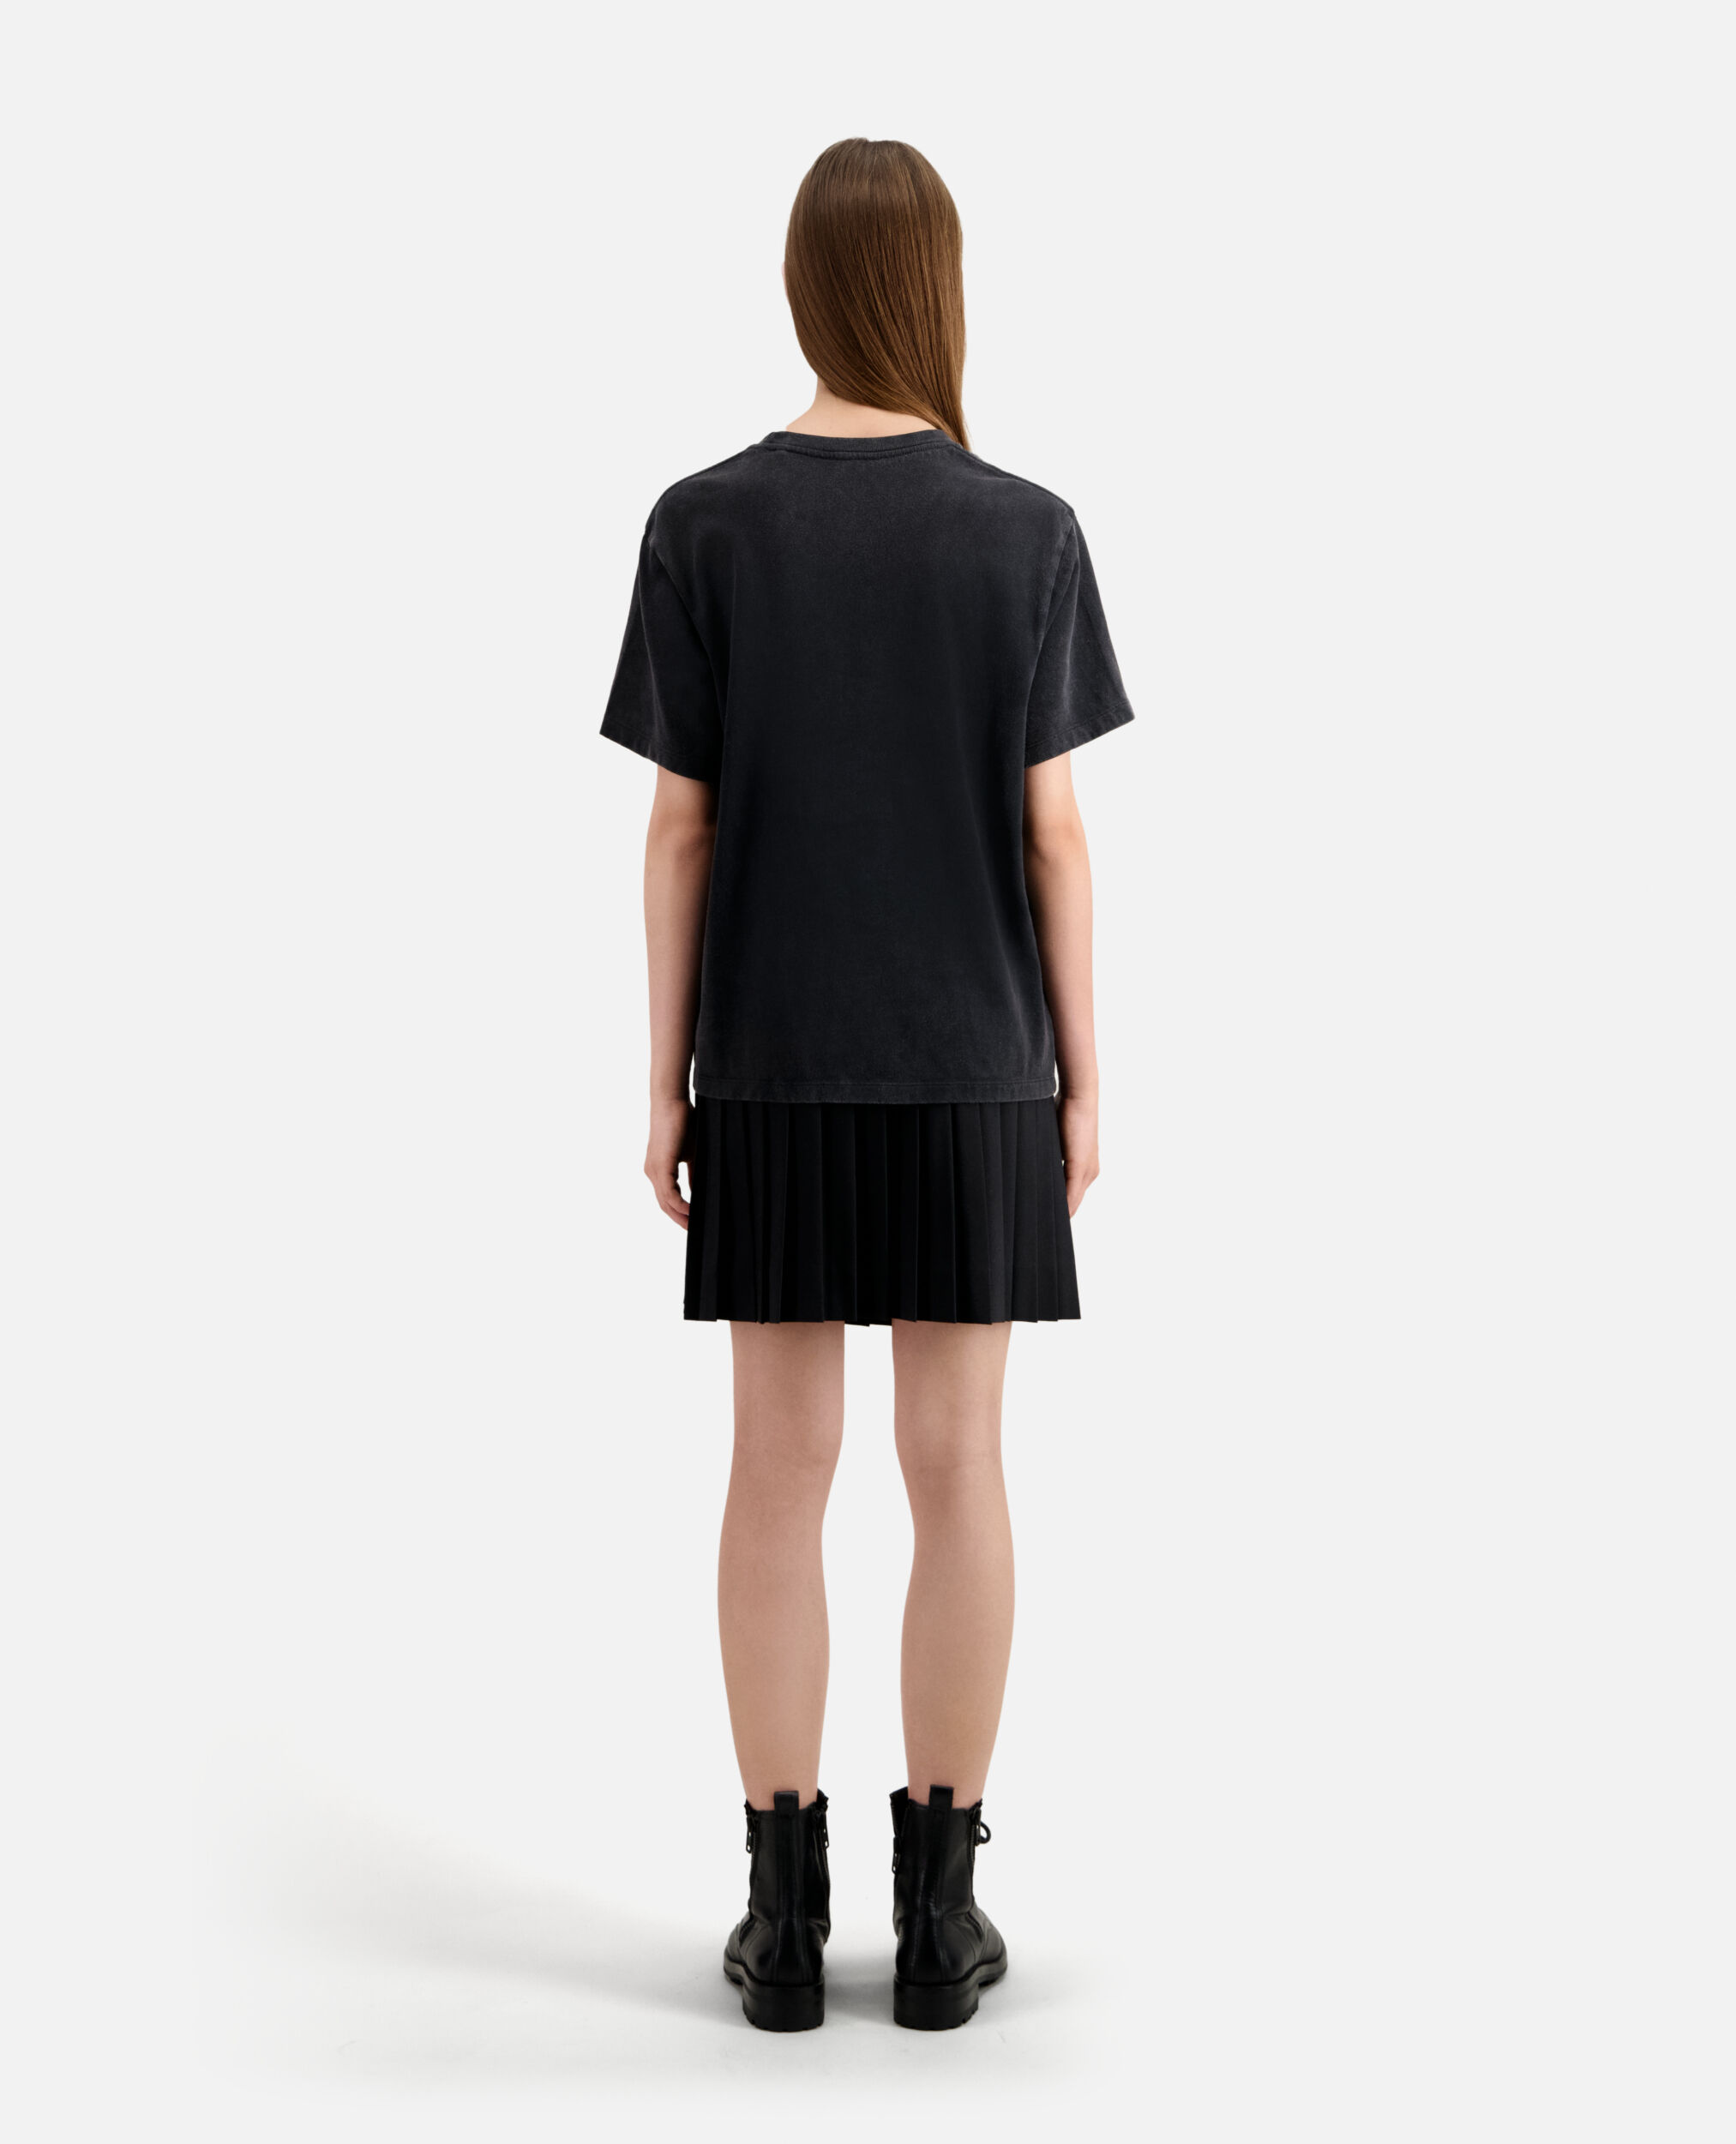 T-shirt Femme noir avec sérigraphie Cobra, BLACK / PINK, hi-res image number null